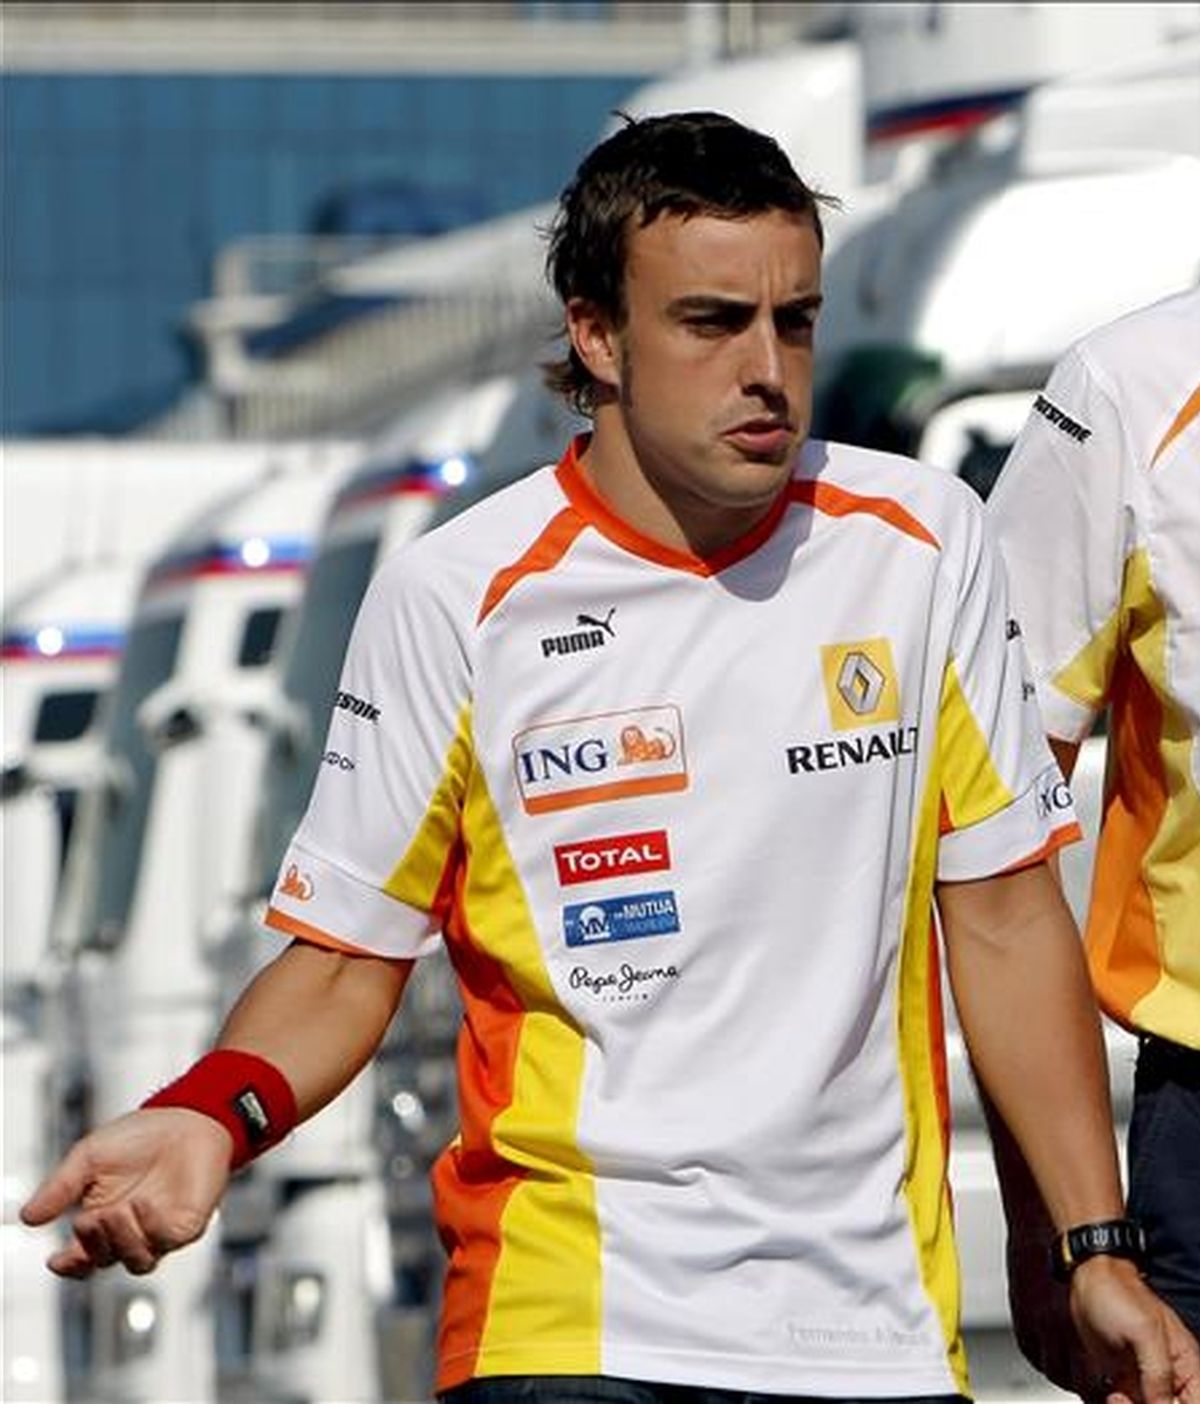 El piloto español Fernando Alonso reiteró su confianza en el equipo Renault a seis días del Gran Premio de Gran Bretaña pero advirtió que "hay que ser realistas" con respecto a las posibilidades en el presente Mundial de Fórmula uno. EFE/Archivo